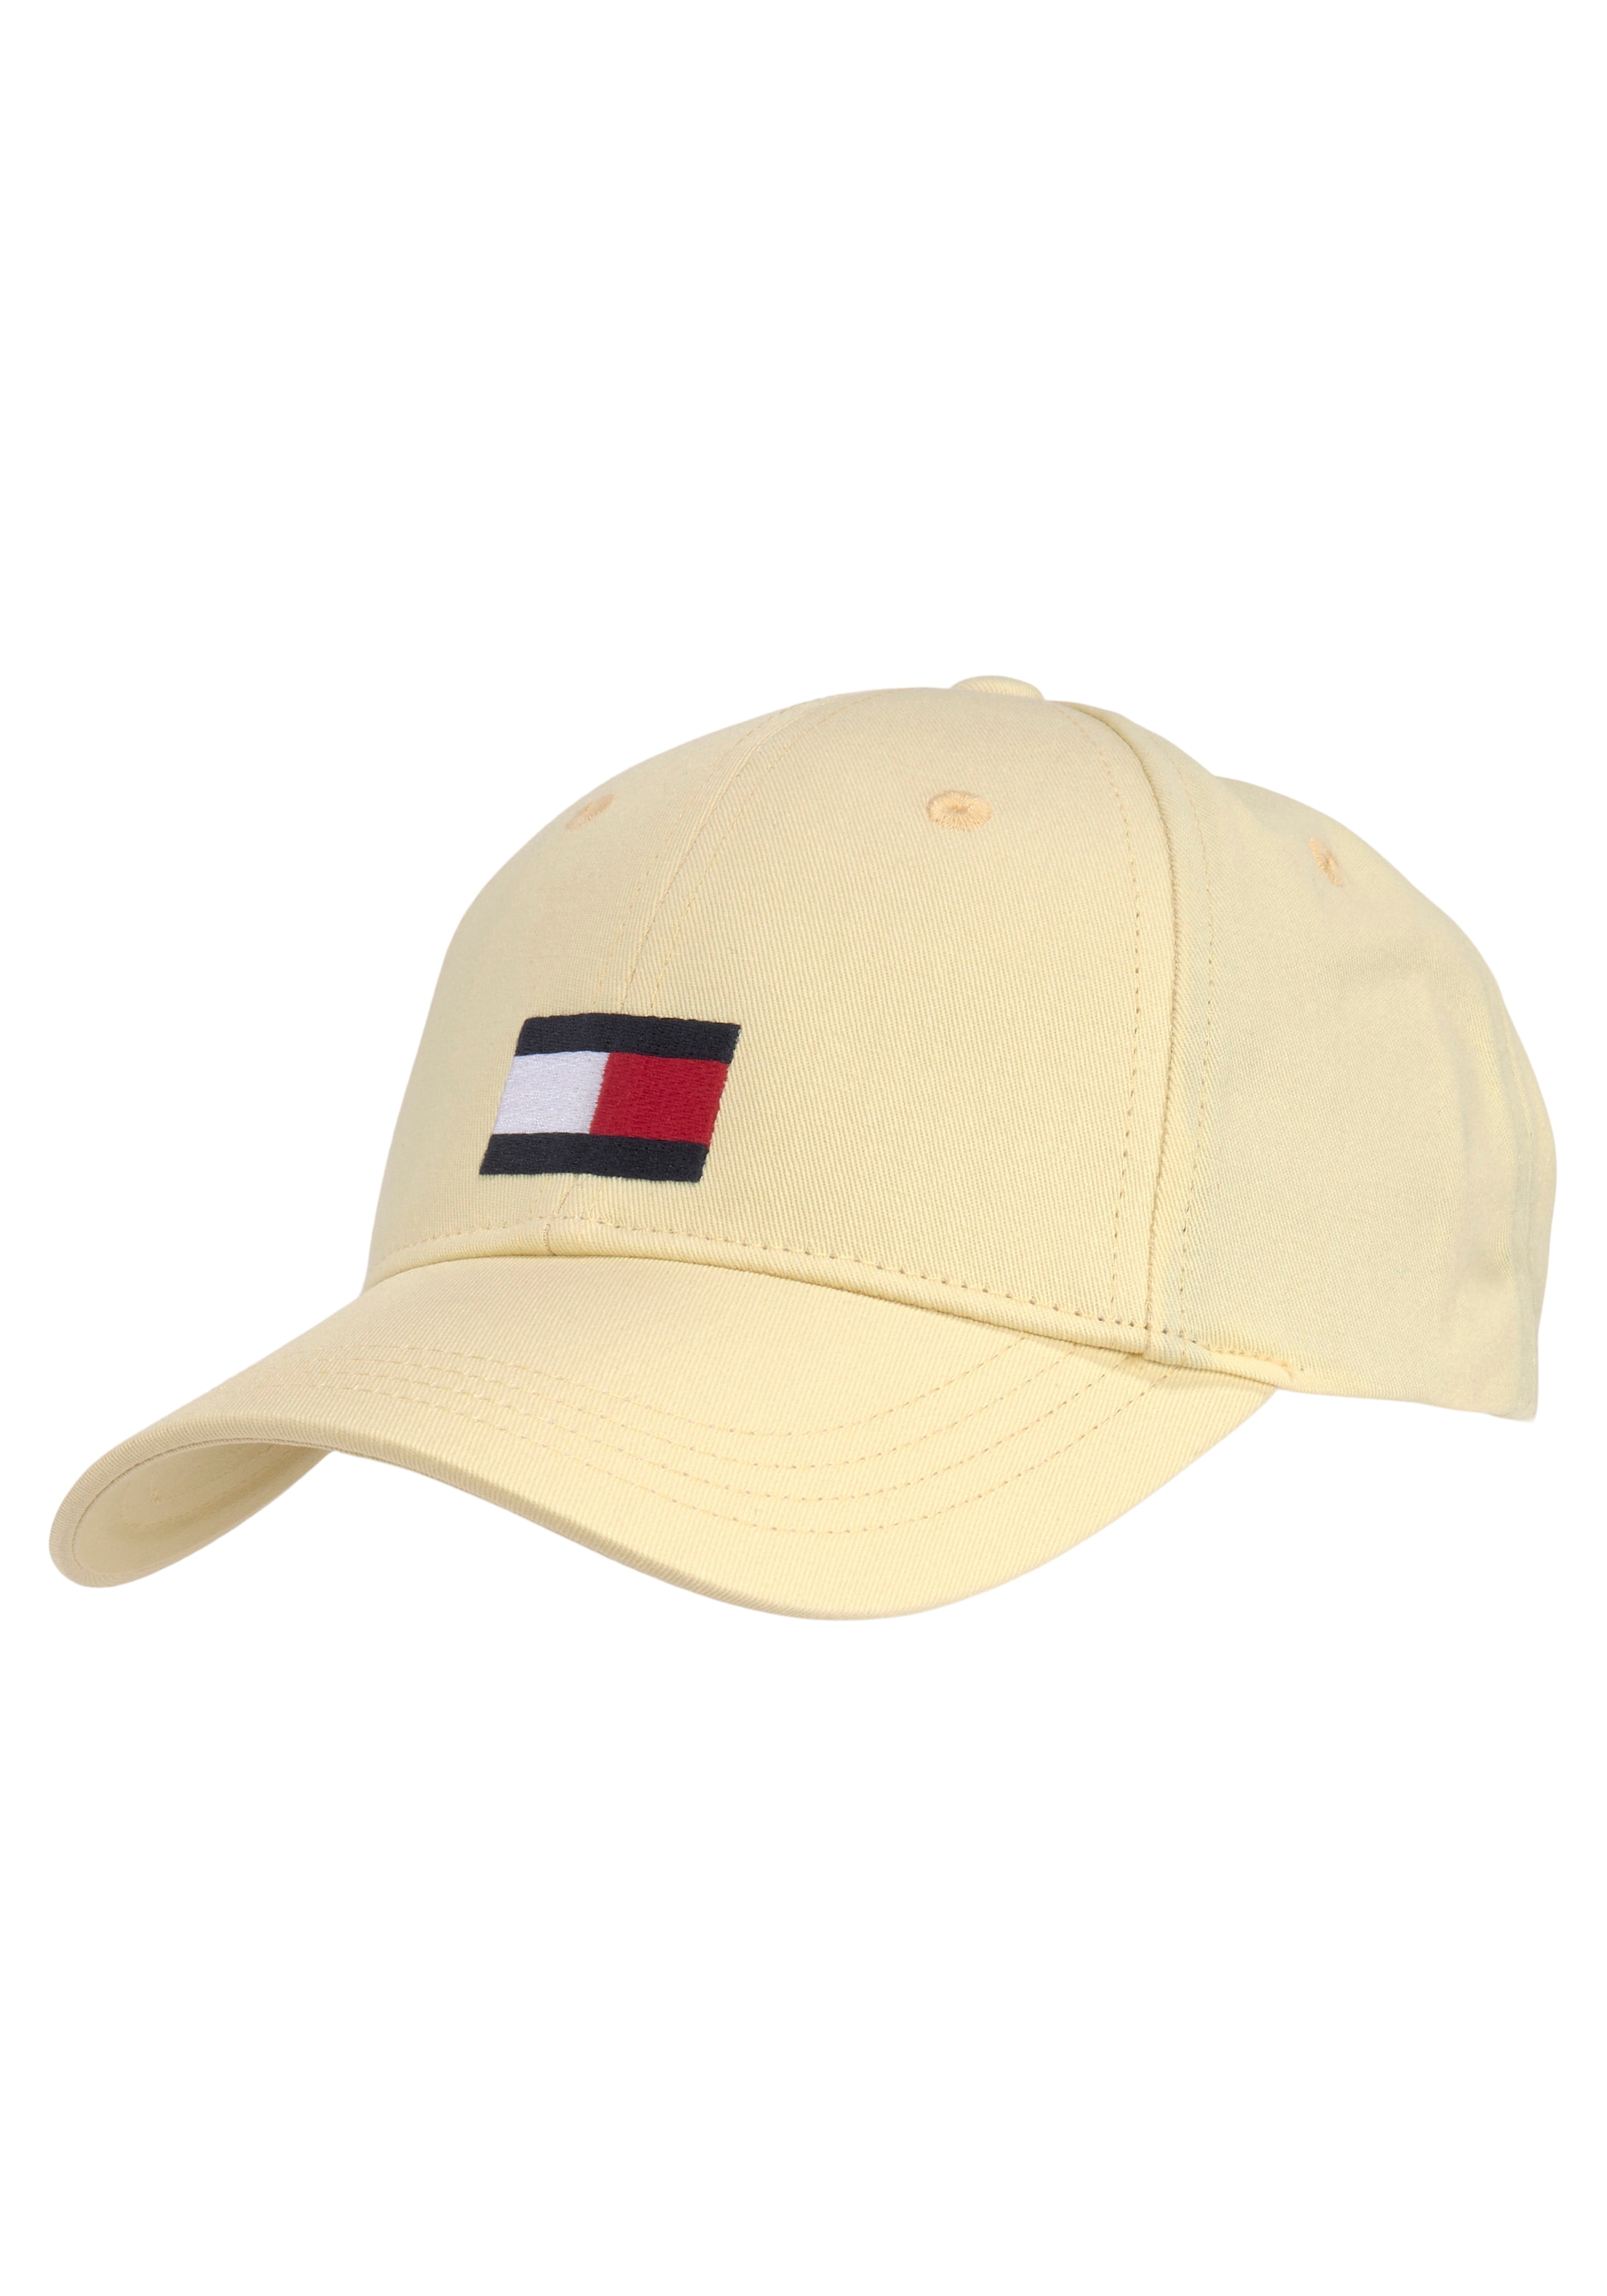 Baseball SOFT CAP« FLAG »Cap bei Tommy Hilfiger Cap BIG